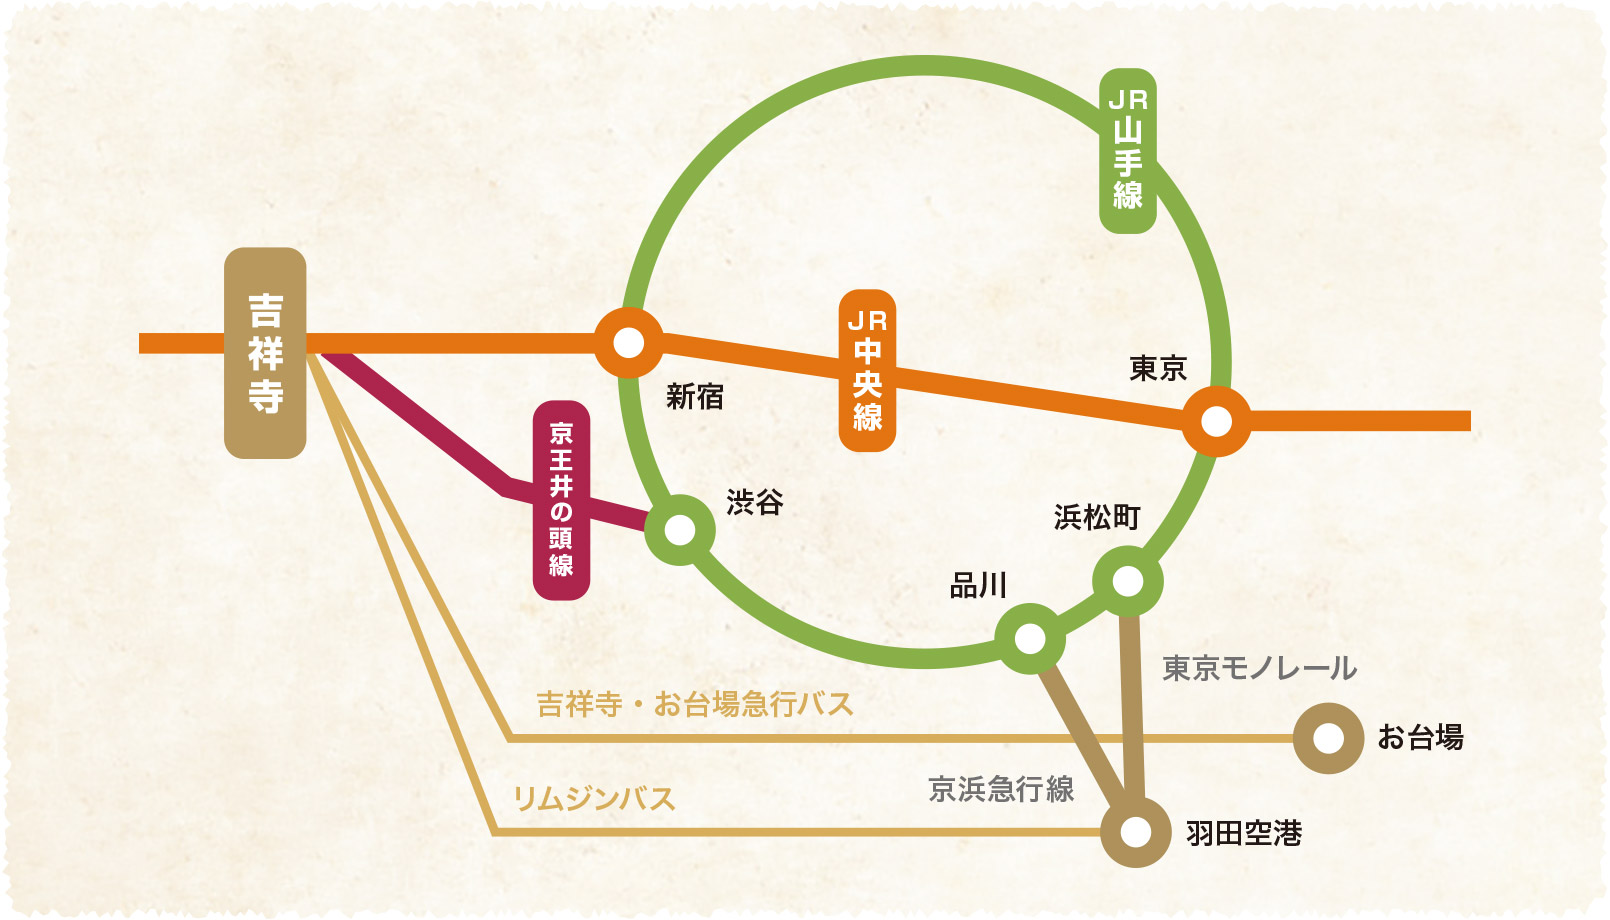 吉祥寺への路線図